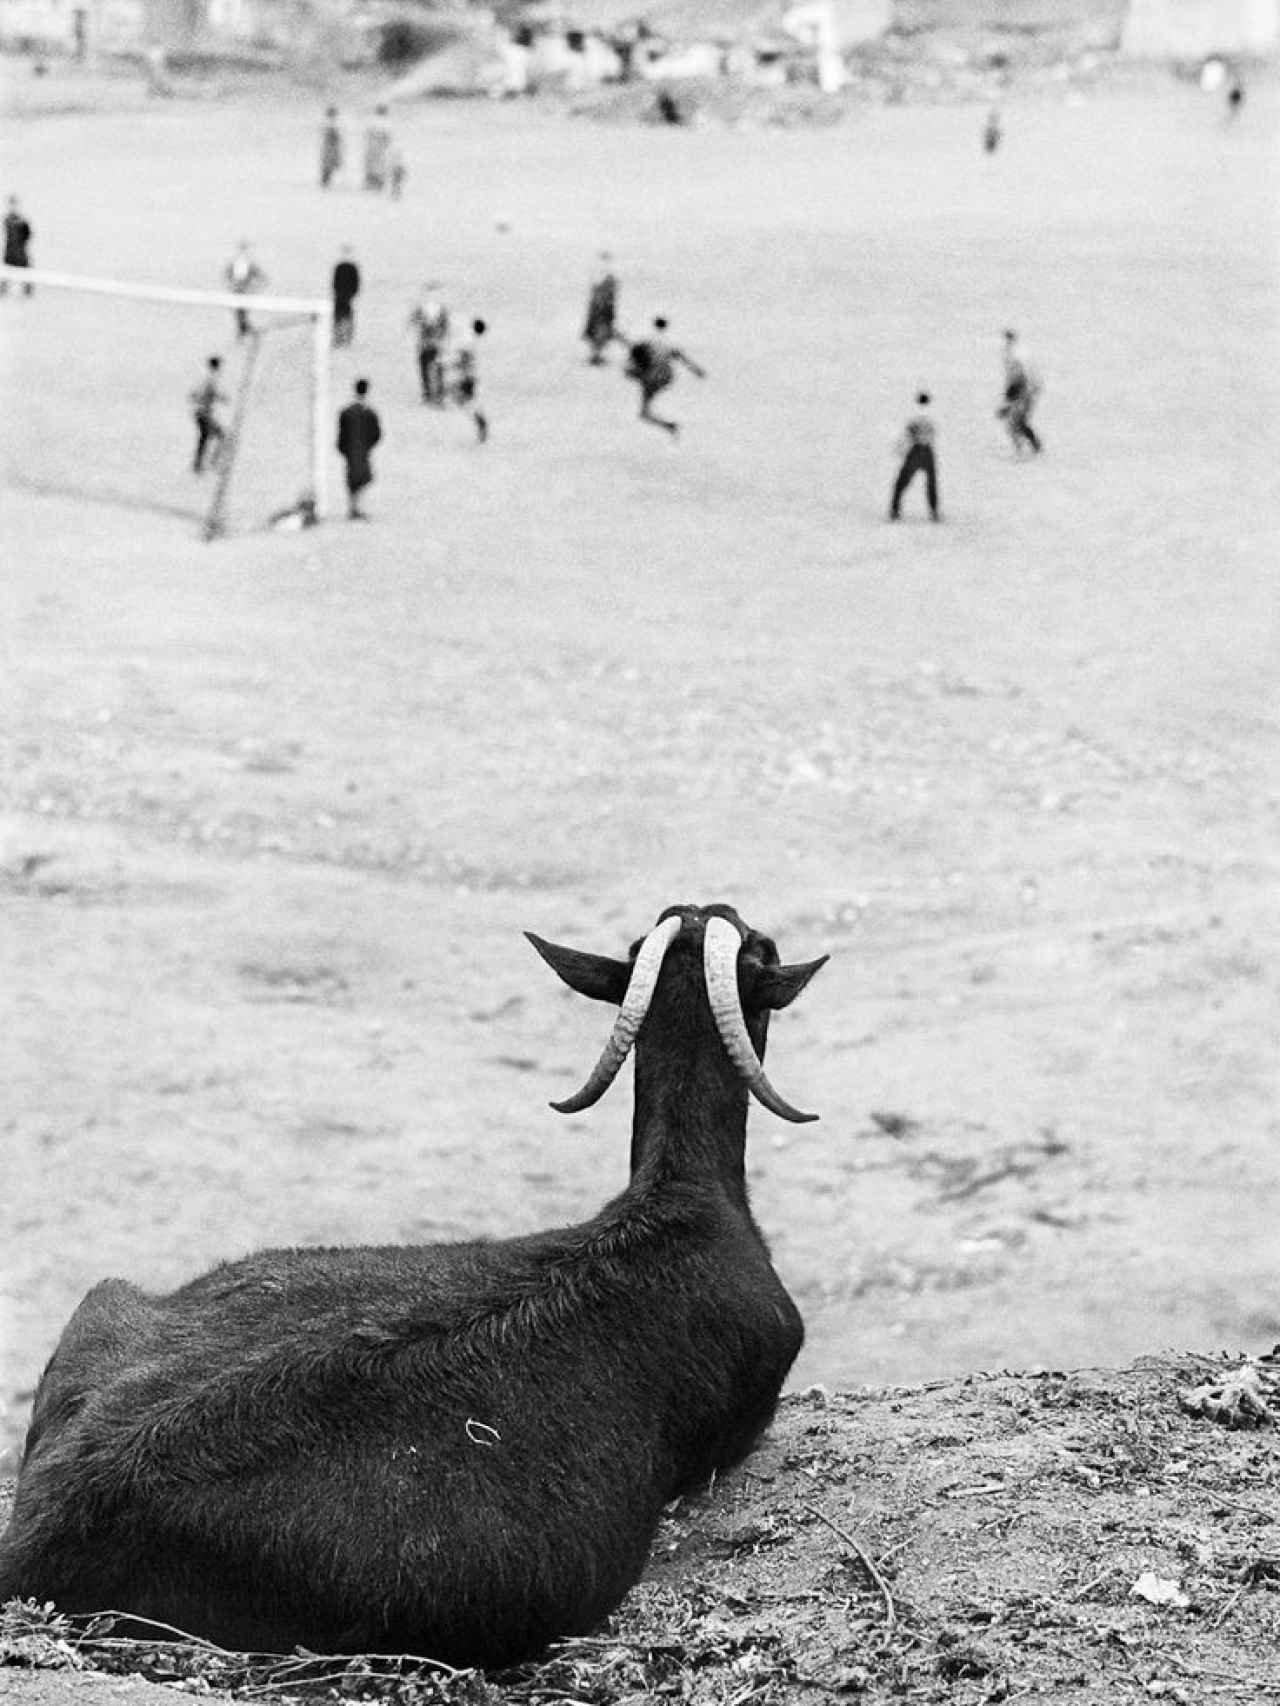 La cabra observando el partido.